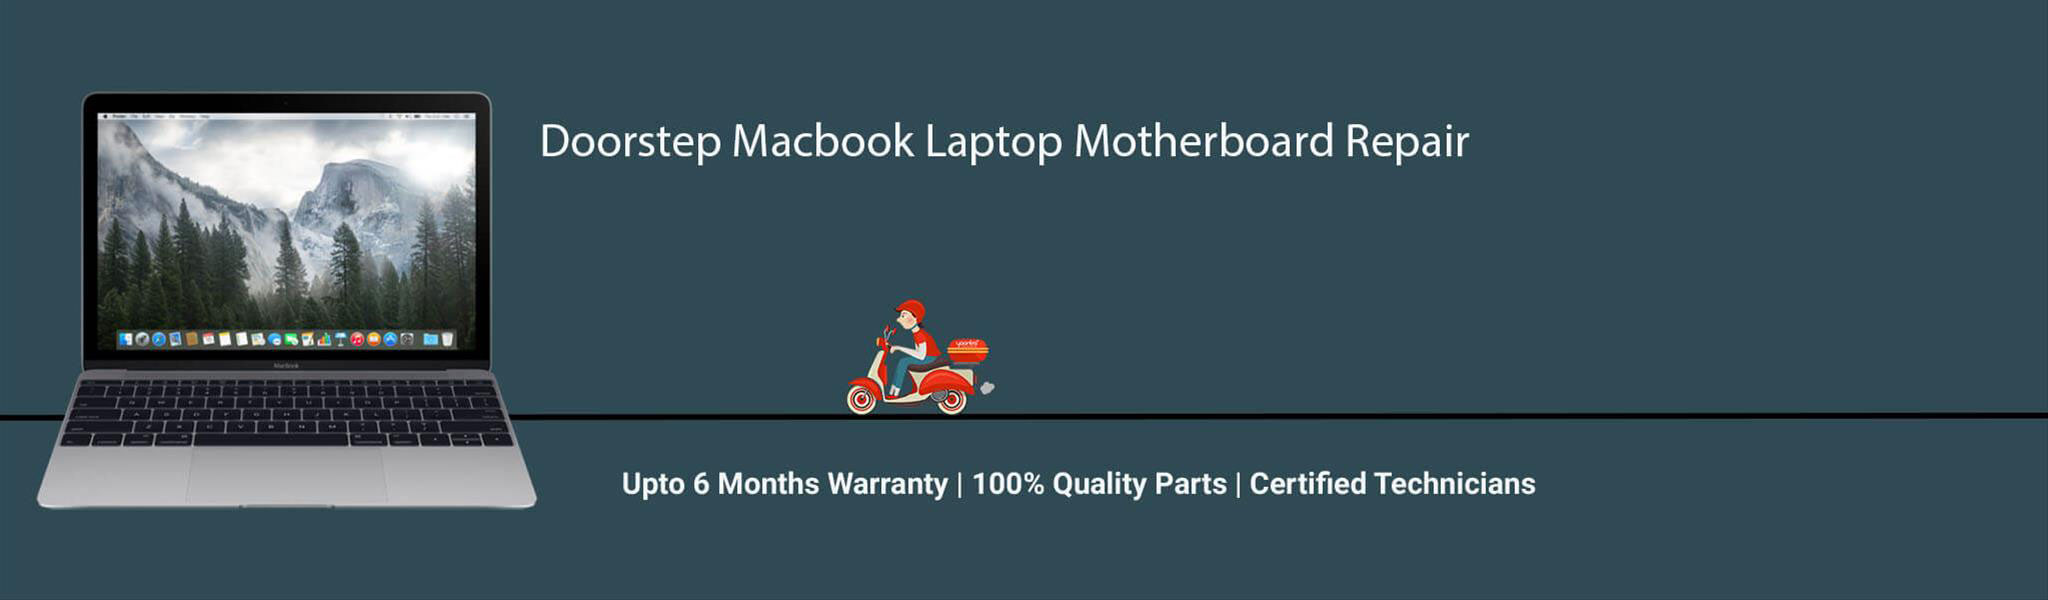 macbook-laptop-motherboard-repair.jpg